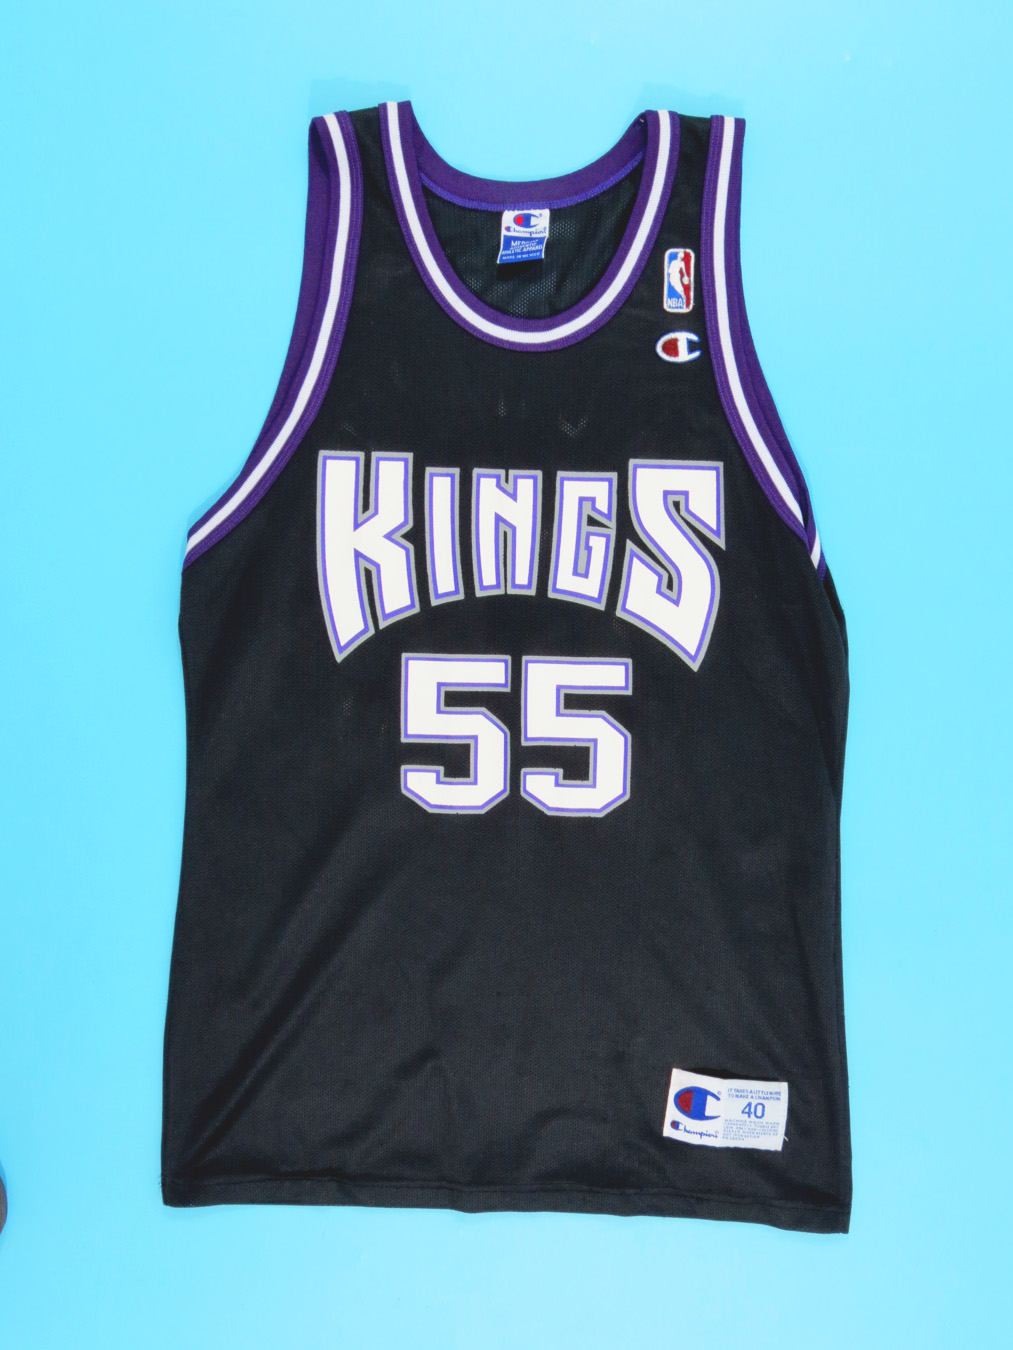 90s kings jersey